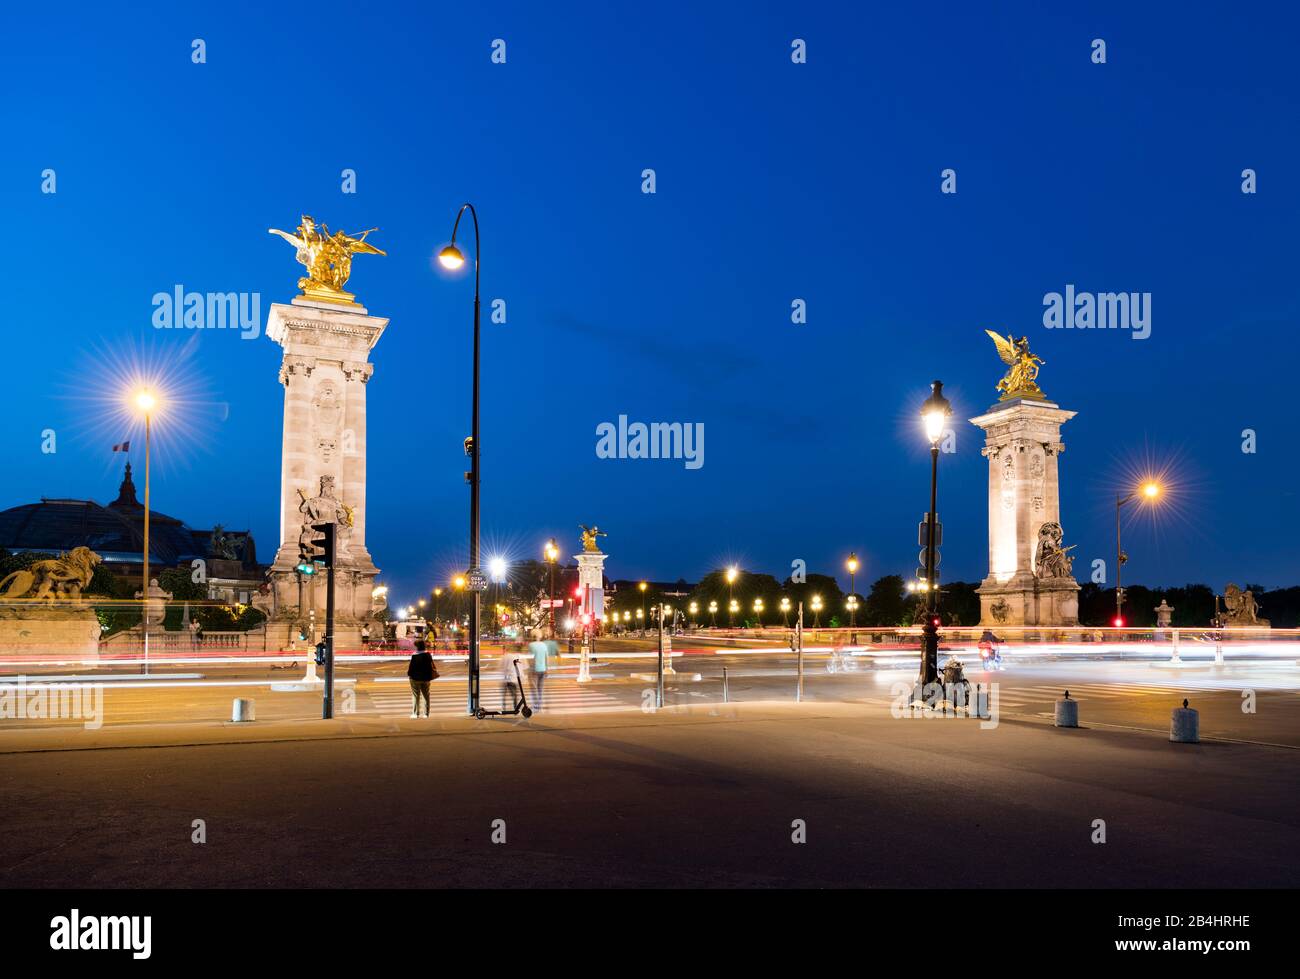 Lichtsfalen von fahrenden Autos und Tristen vor der Brücke Pont Alexandre III, Paris, Frankreich, Europa Banque D'Images